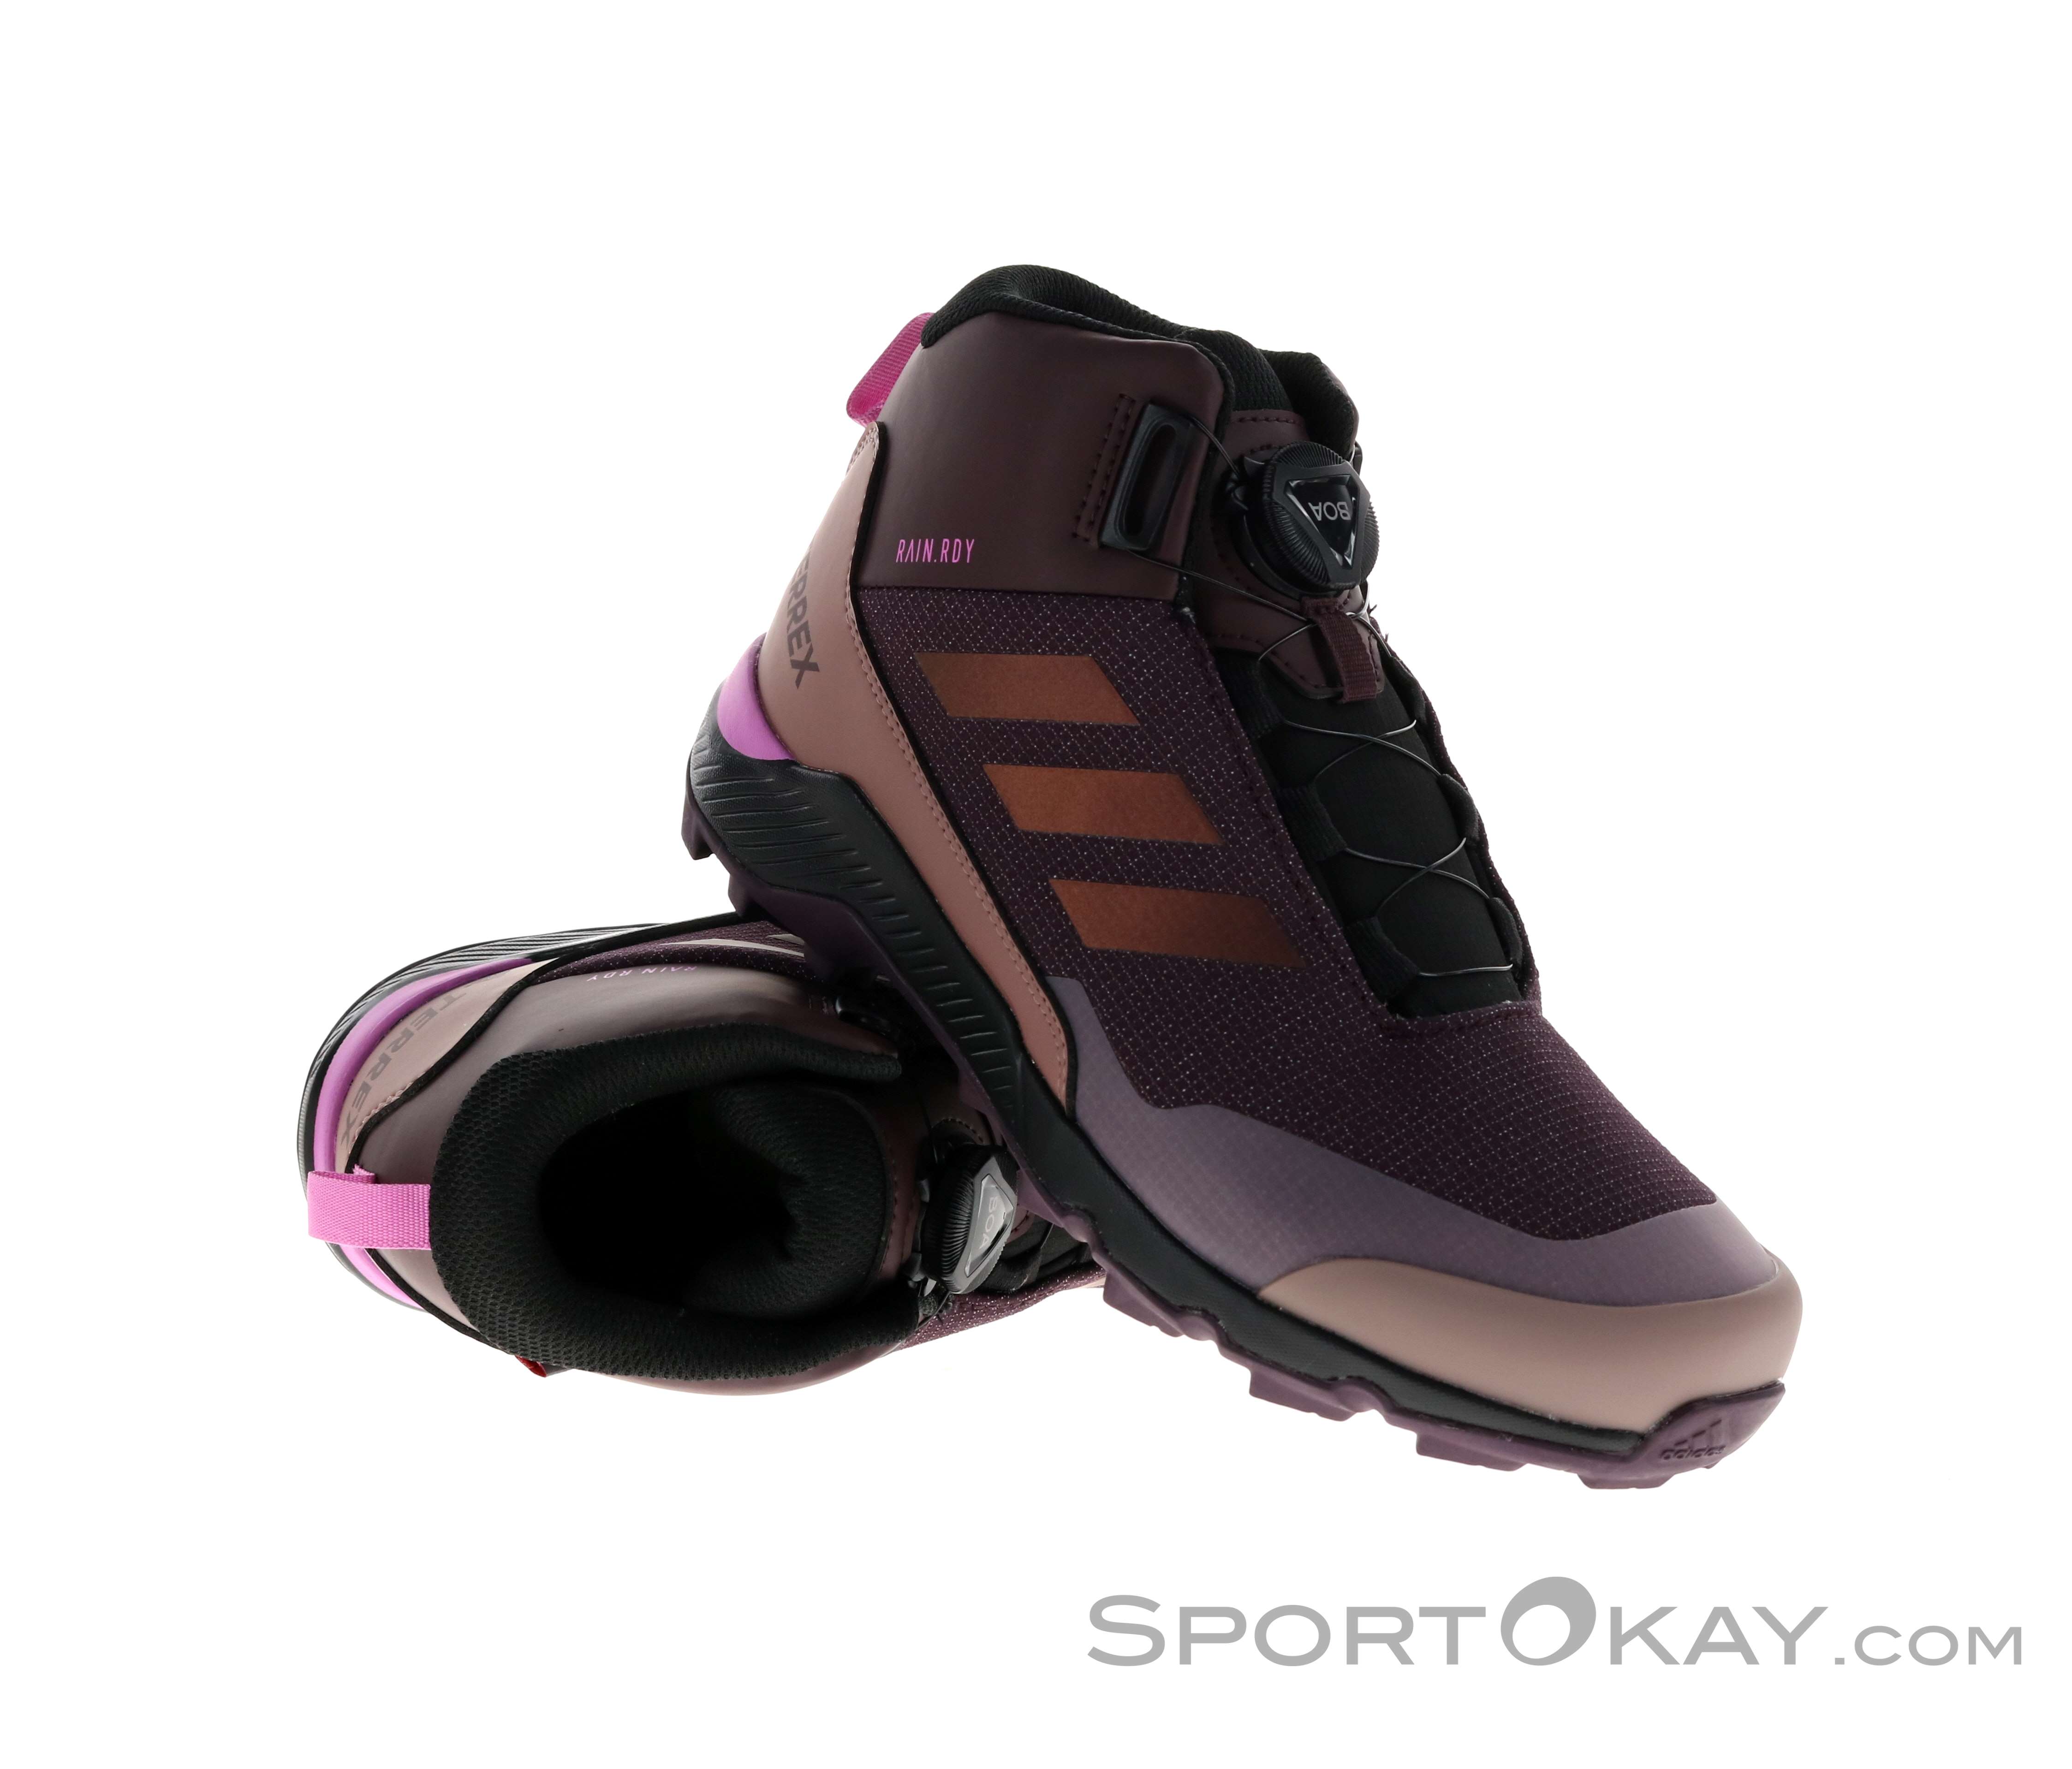 & Terrex Winter Stöcke Wanderschuhe Outdoor adidas - Alle Schuhe Boa - - Mid Wanderschuhe Kinder -